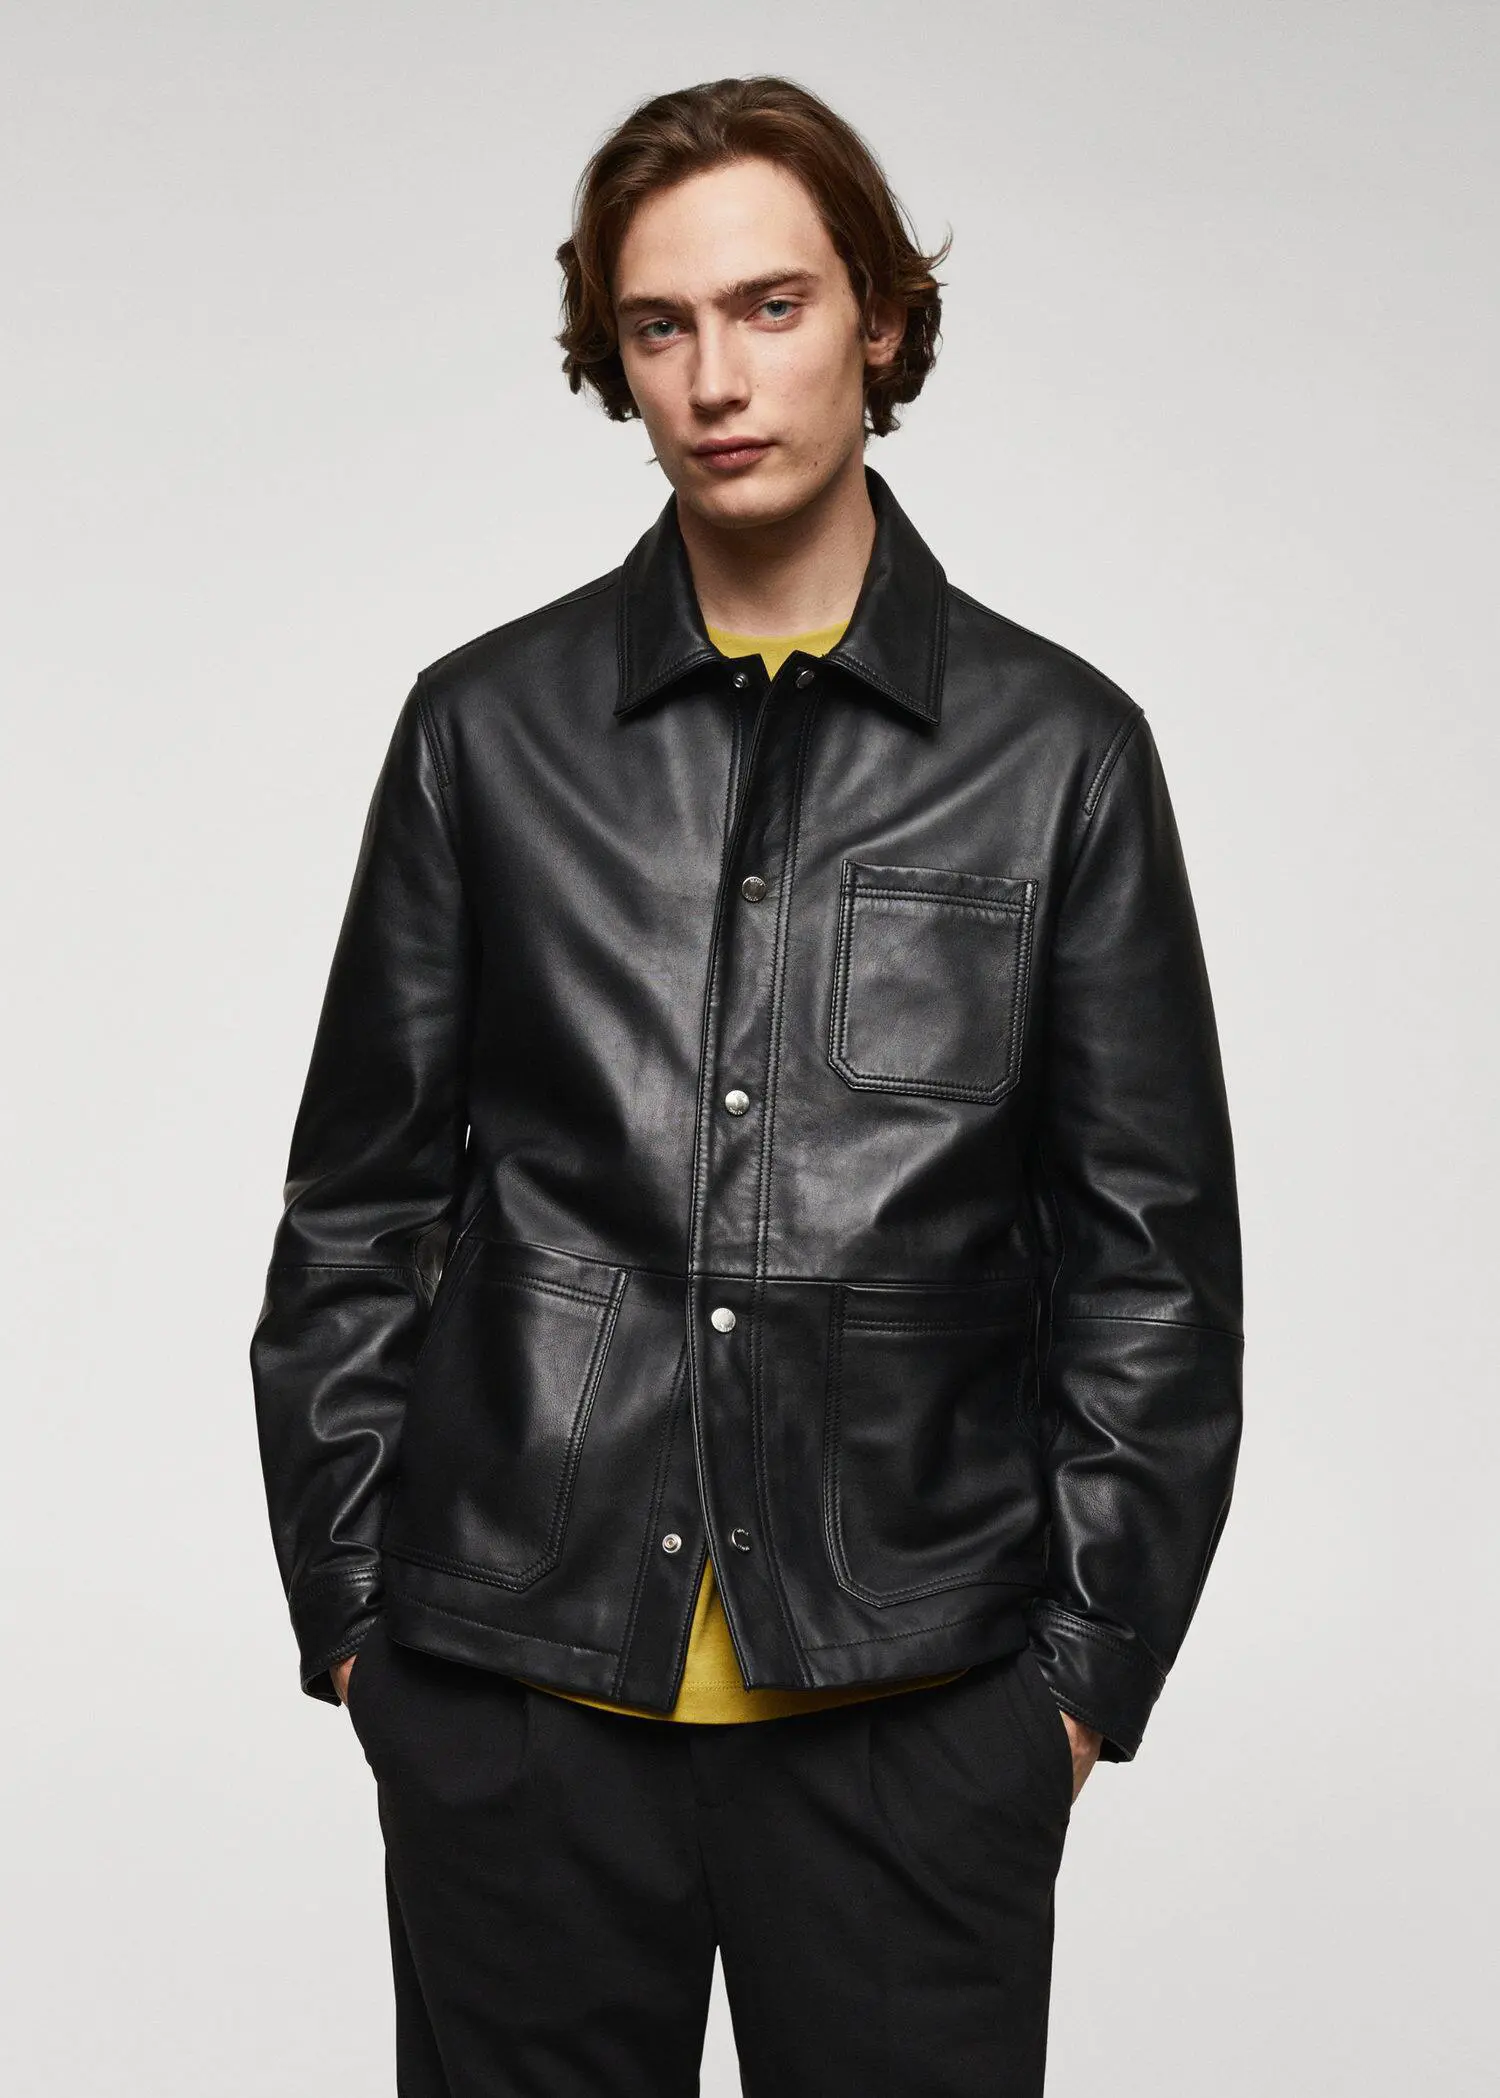 Mango 100% nappa leather jacket. 2